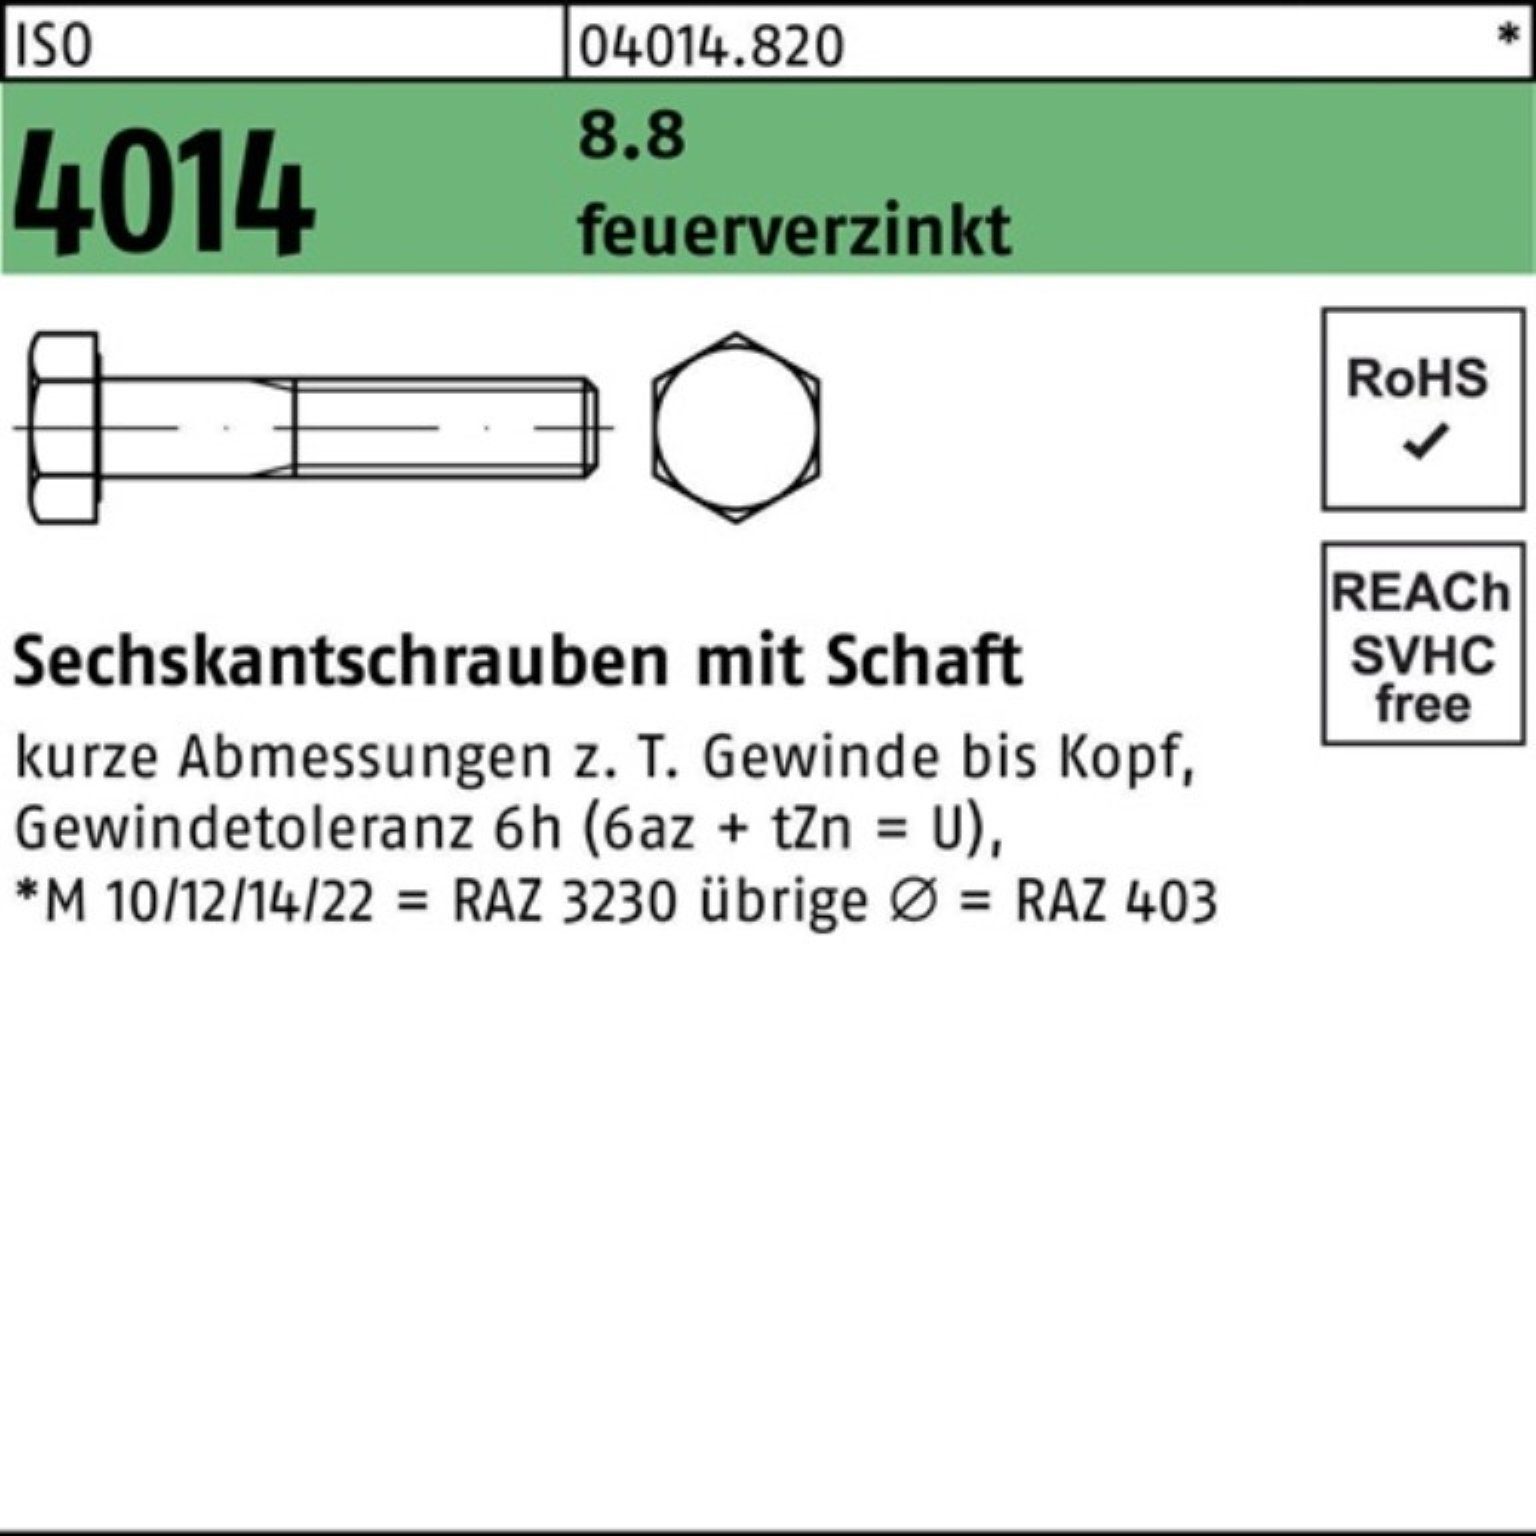 Pack Schaft 4014 ISO Bufab Sechskantschraube Sechskantschraube 90 8.8 feuerverz. 100er M27x 10